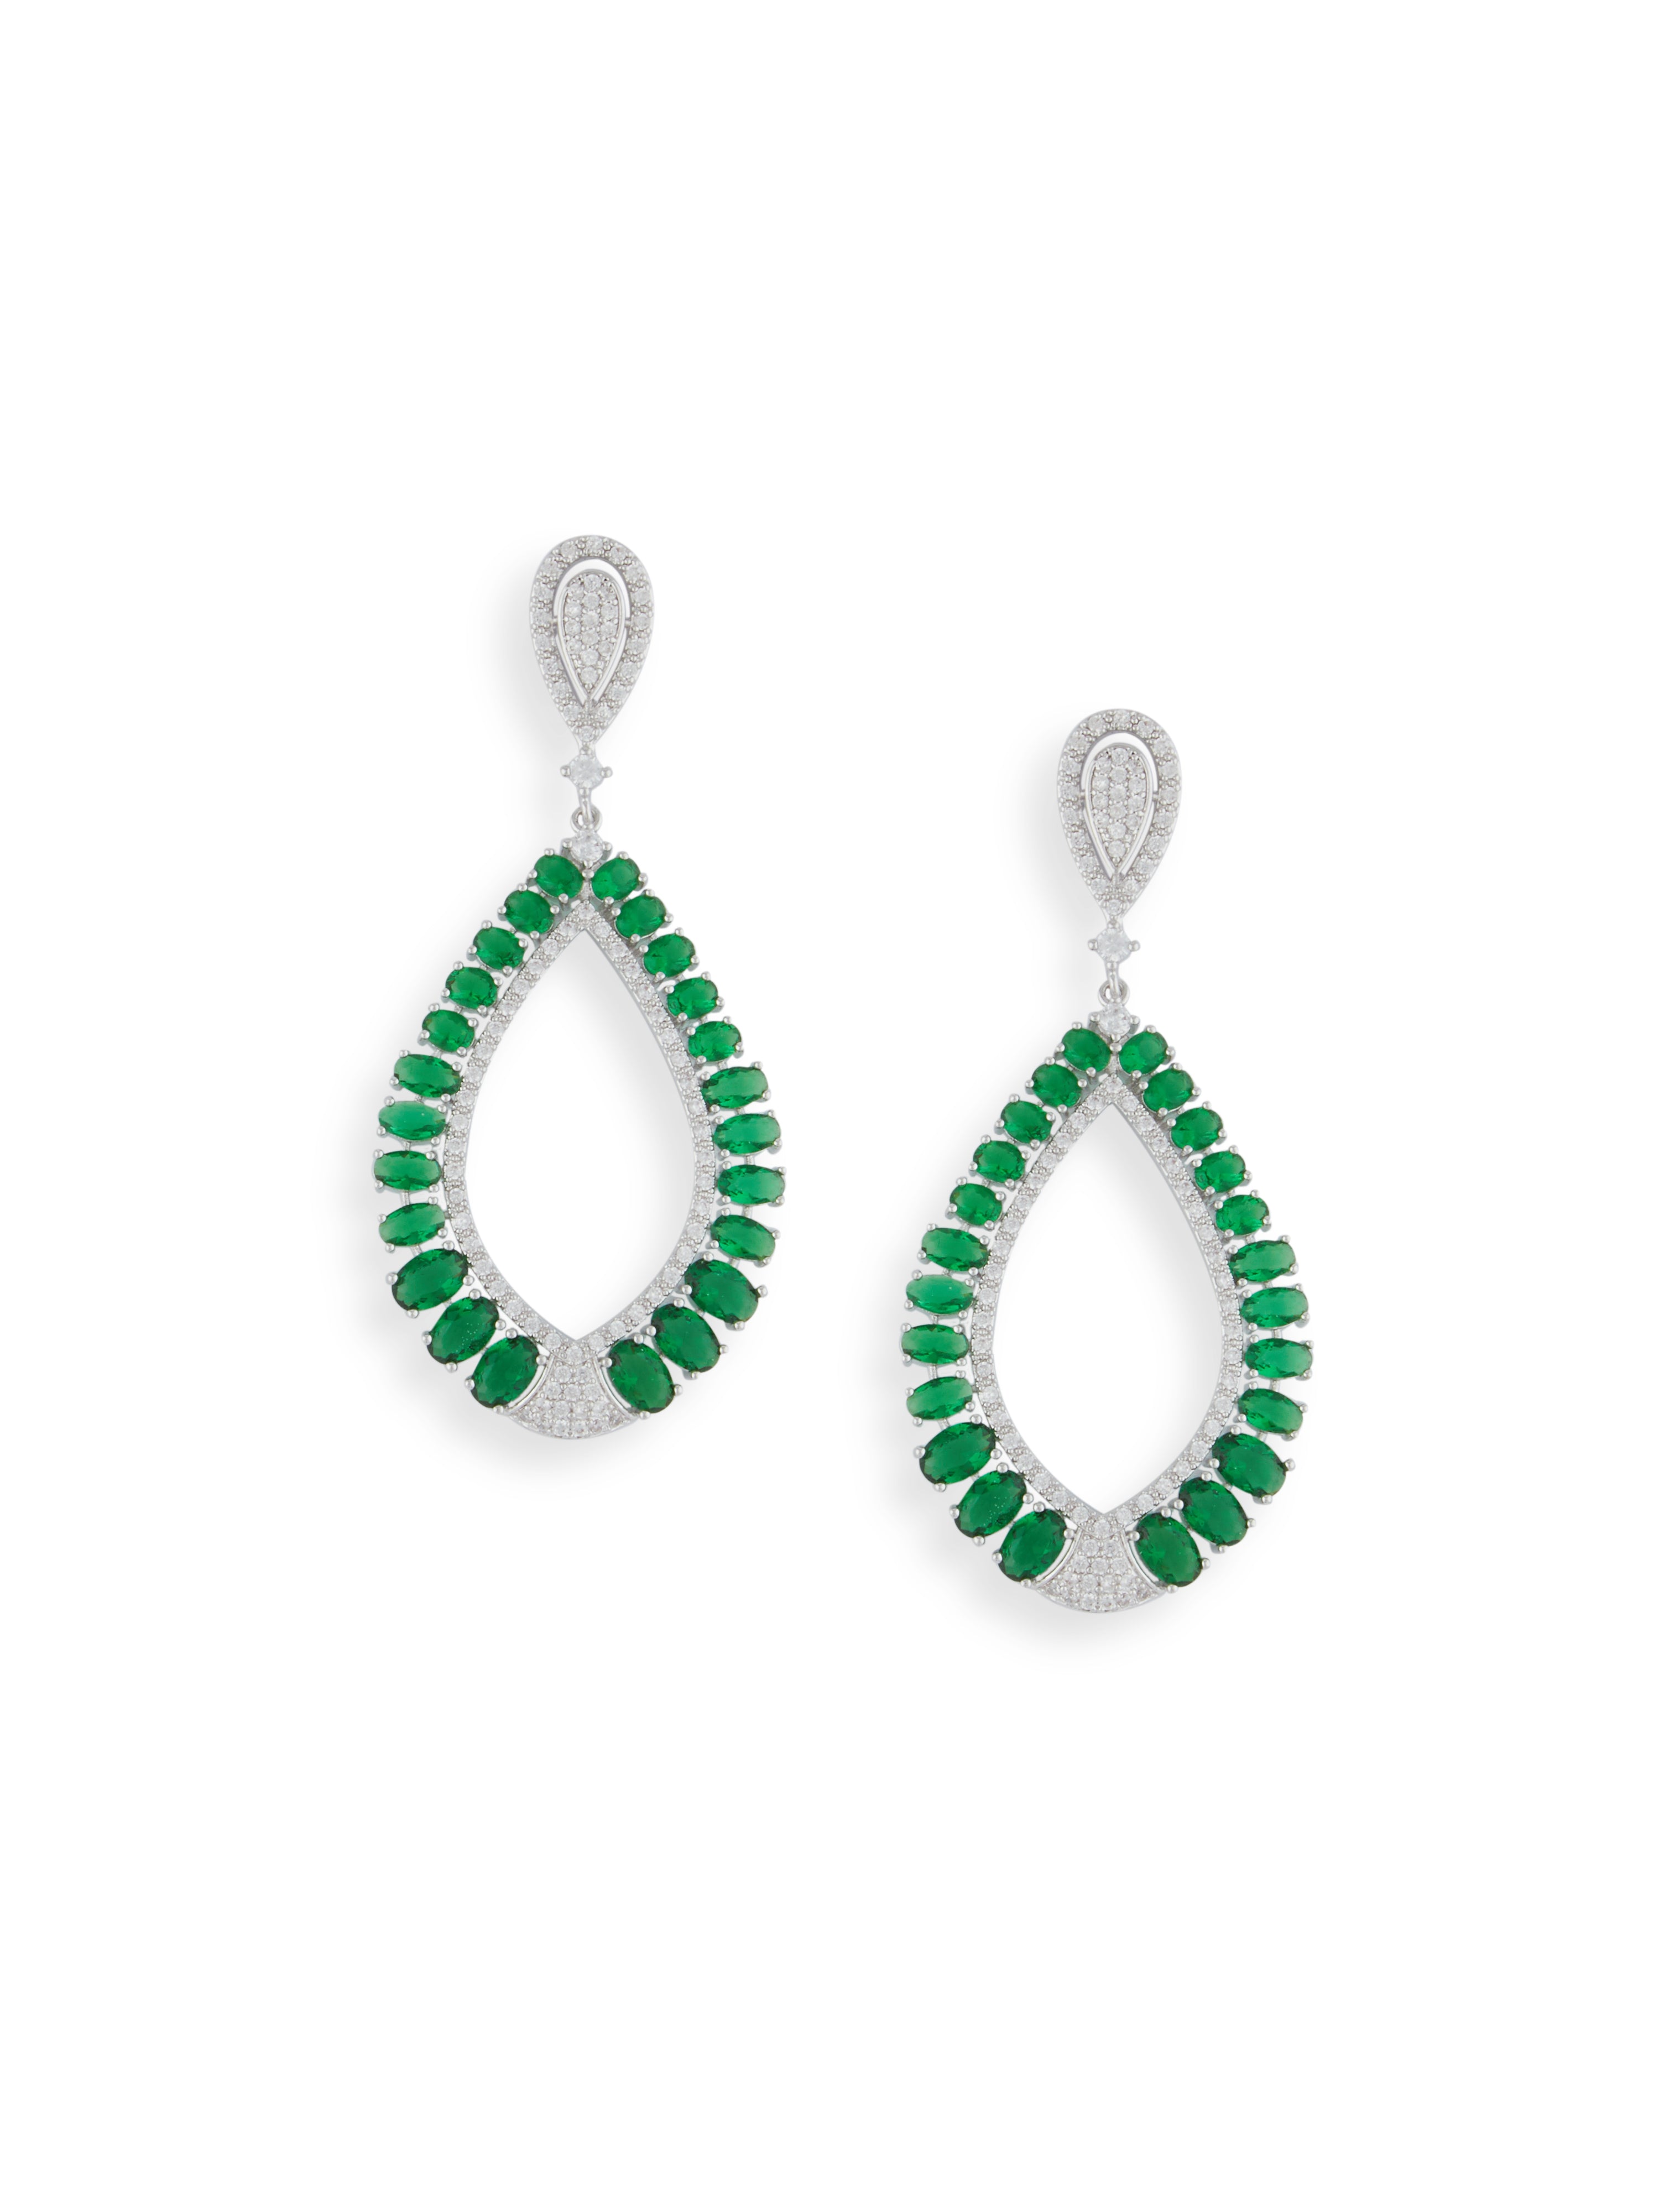 Cubic Zirconia Green Statement Earrings - ChicMela